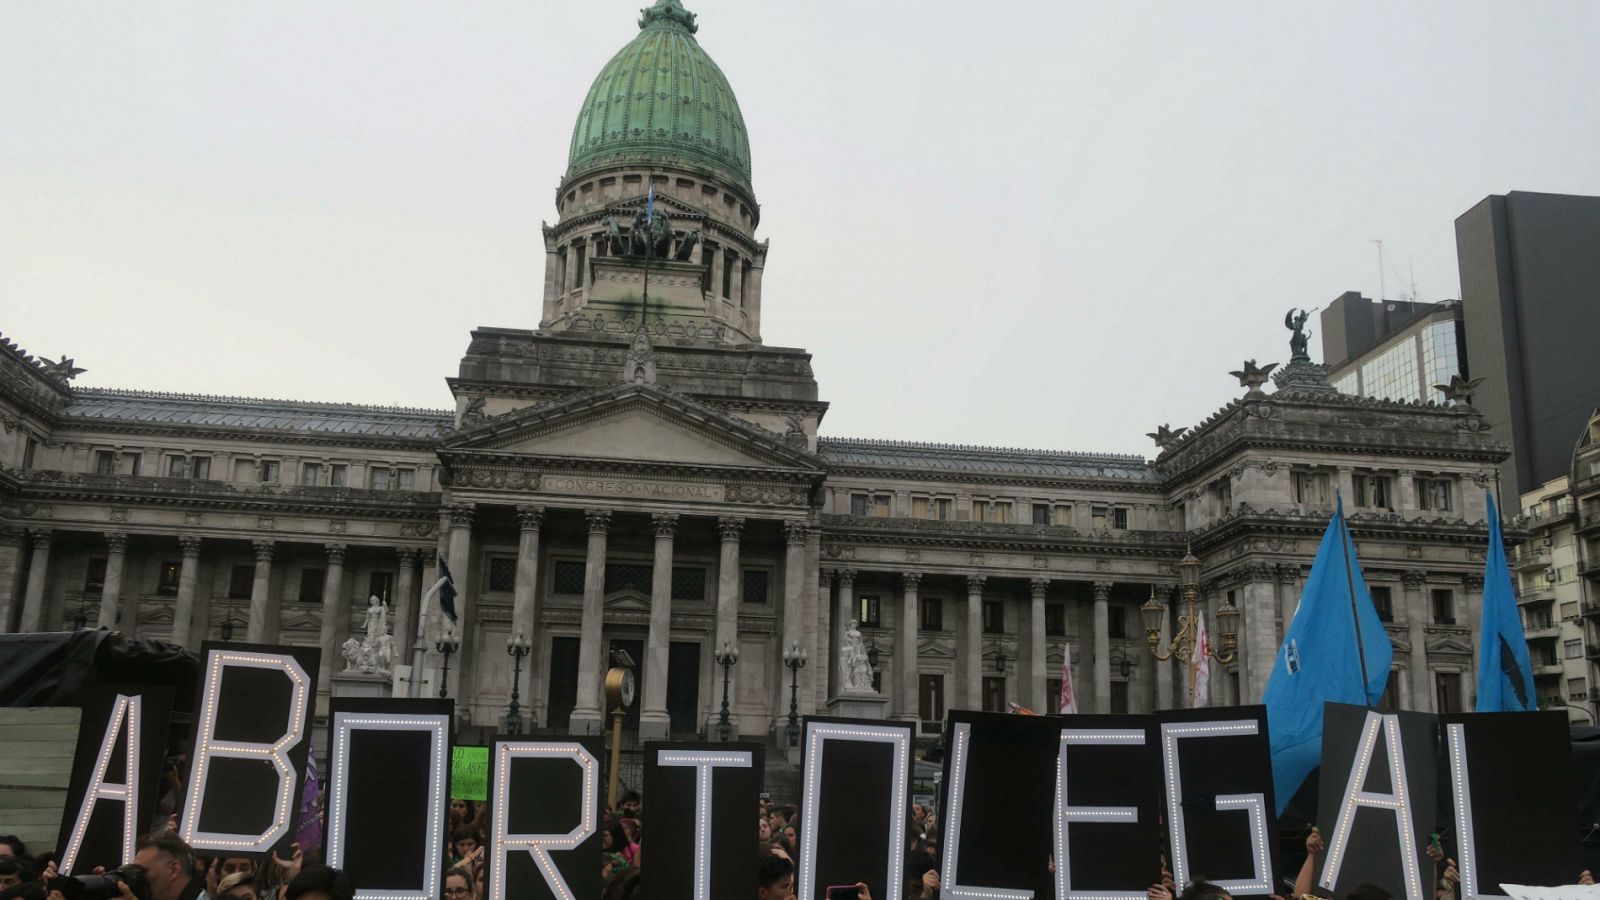 Aborto Argentina | Argentina vuelve a debatir la despenalización del aborto - RTVE.es